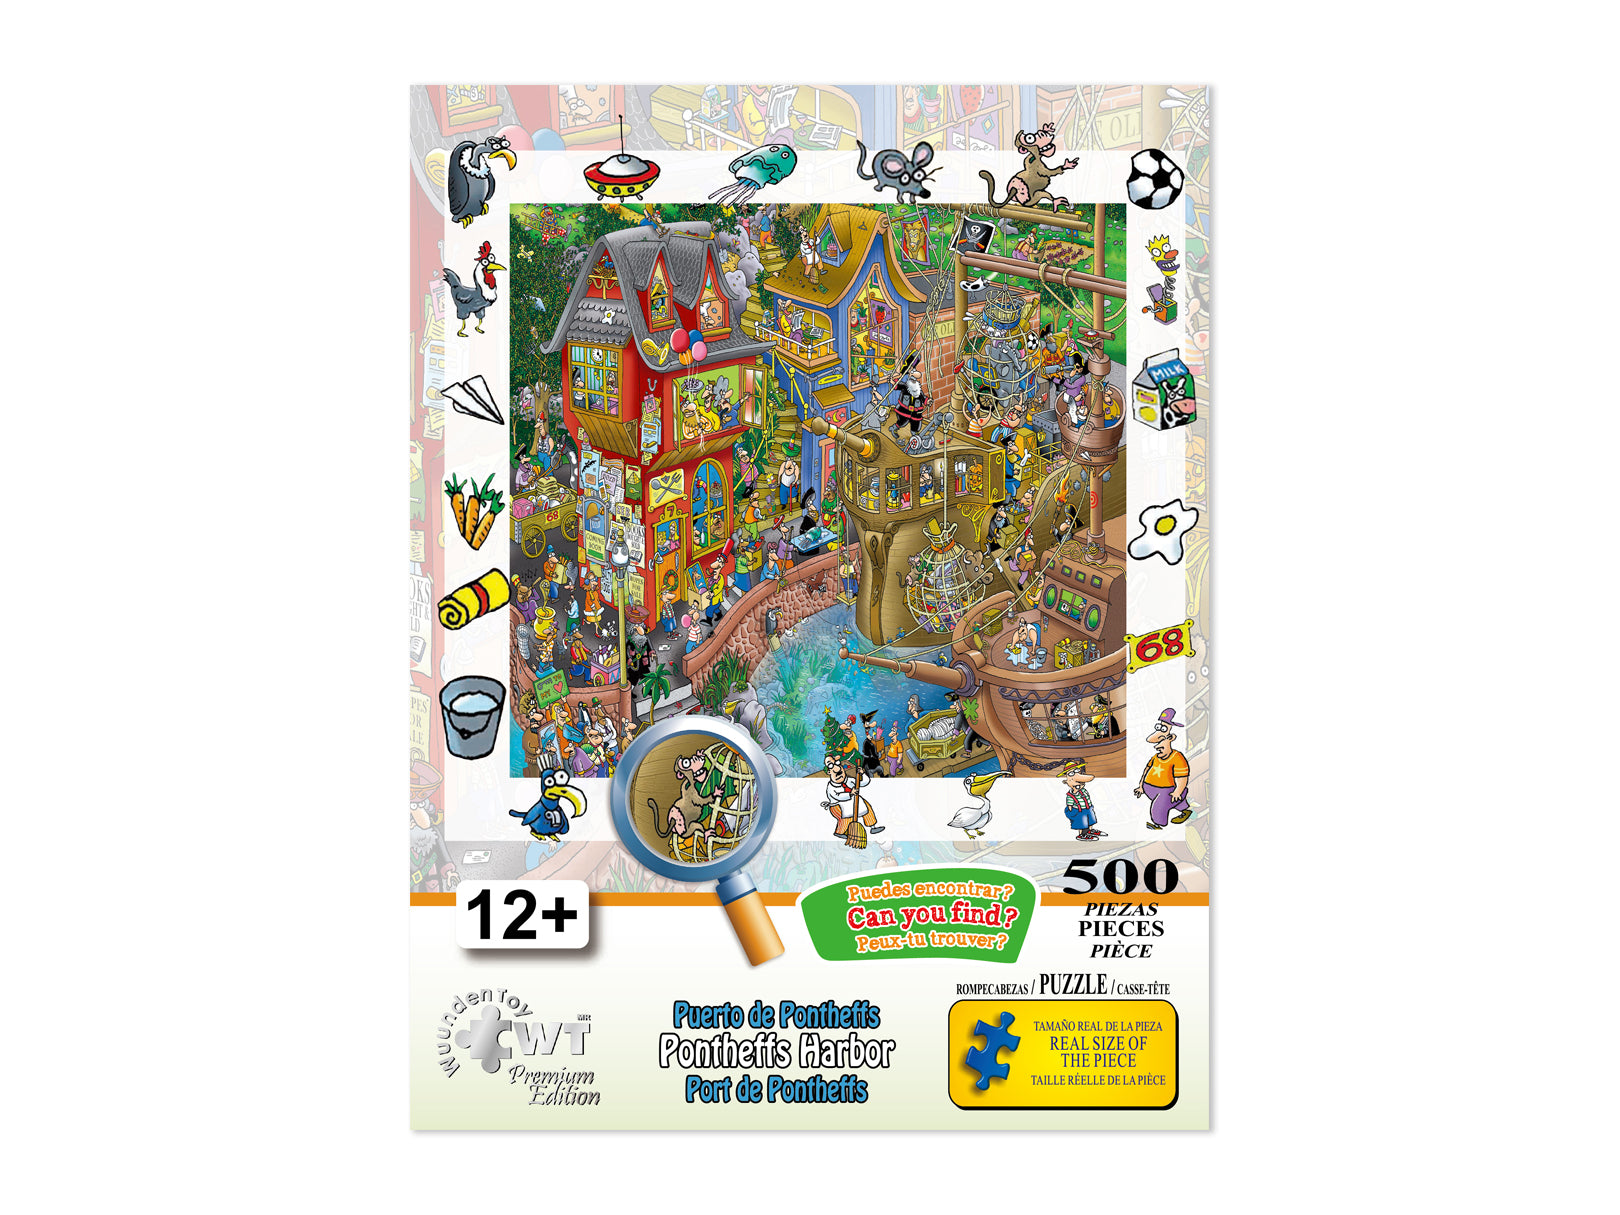 Educa Puerto Escondido - jigsaw puzzle of 500 pieces